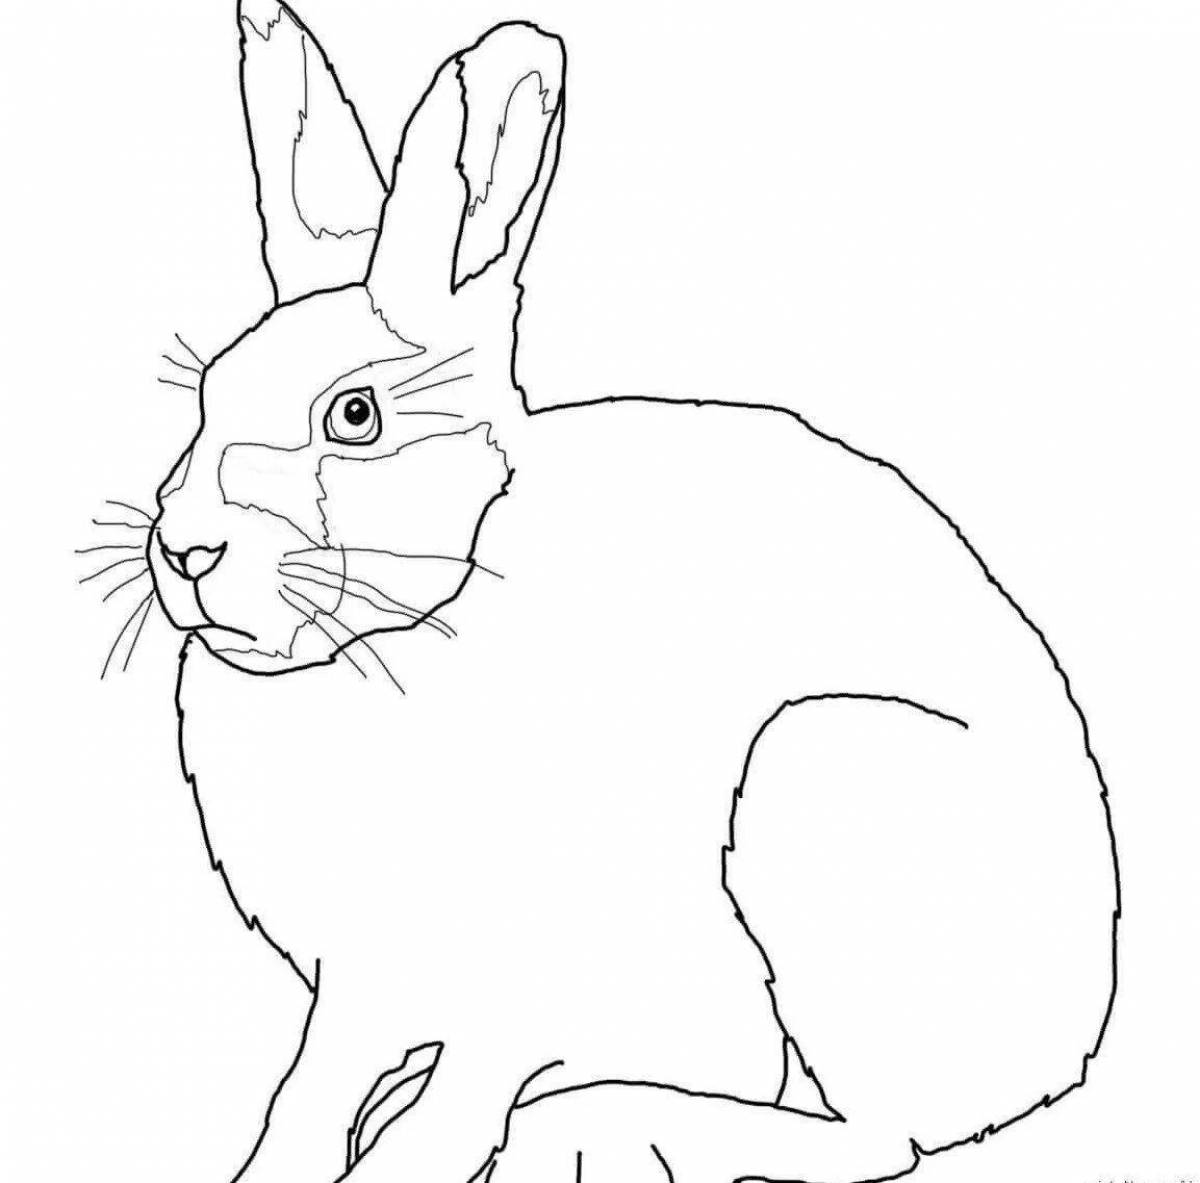 Hare раскраска для детей